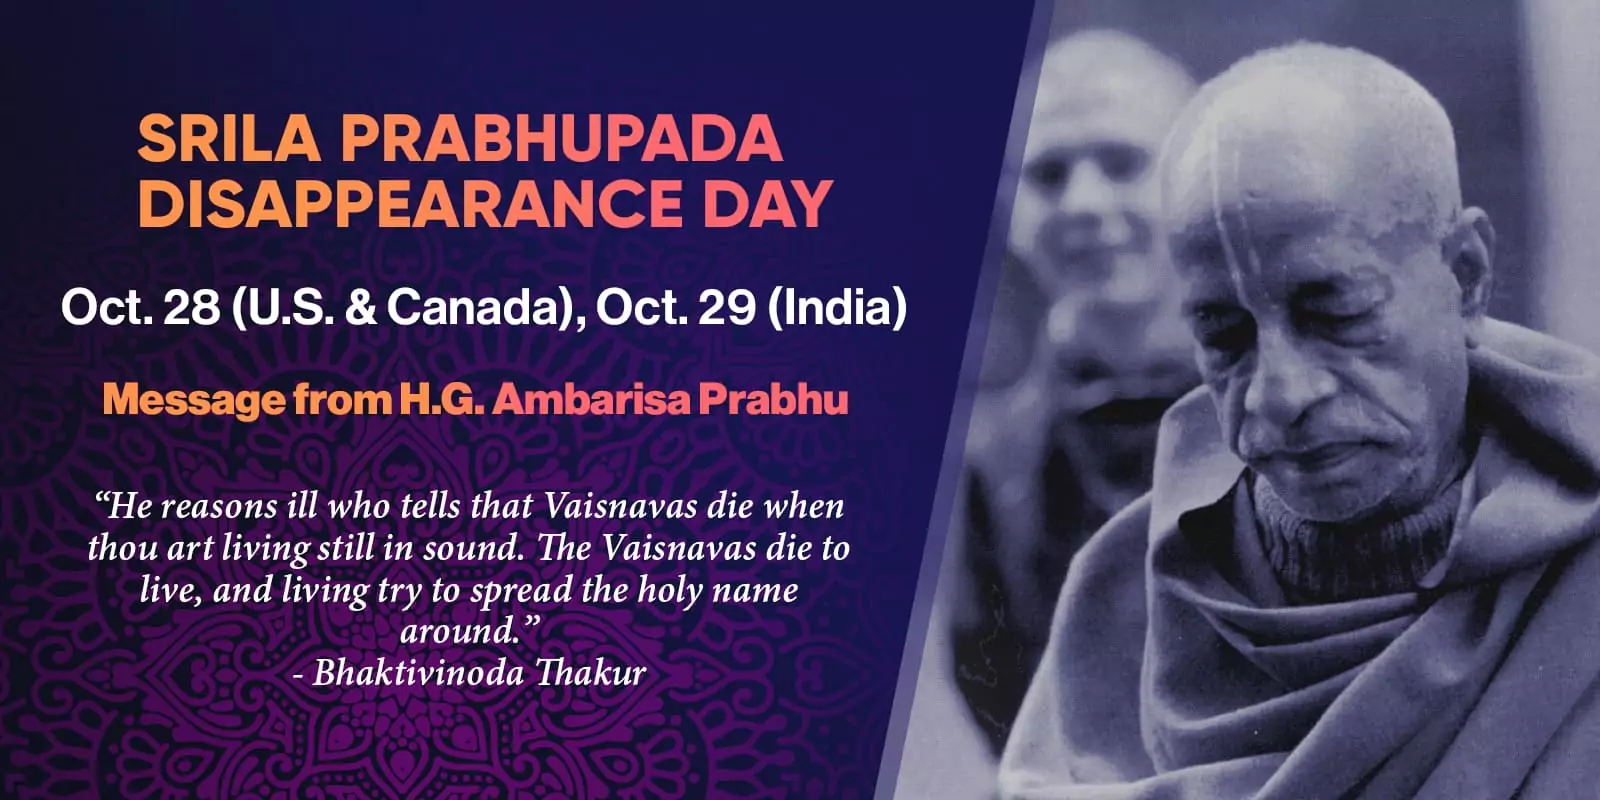 Dia do Desaparecimento Divino de Srila Prabhupada